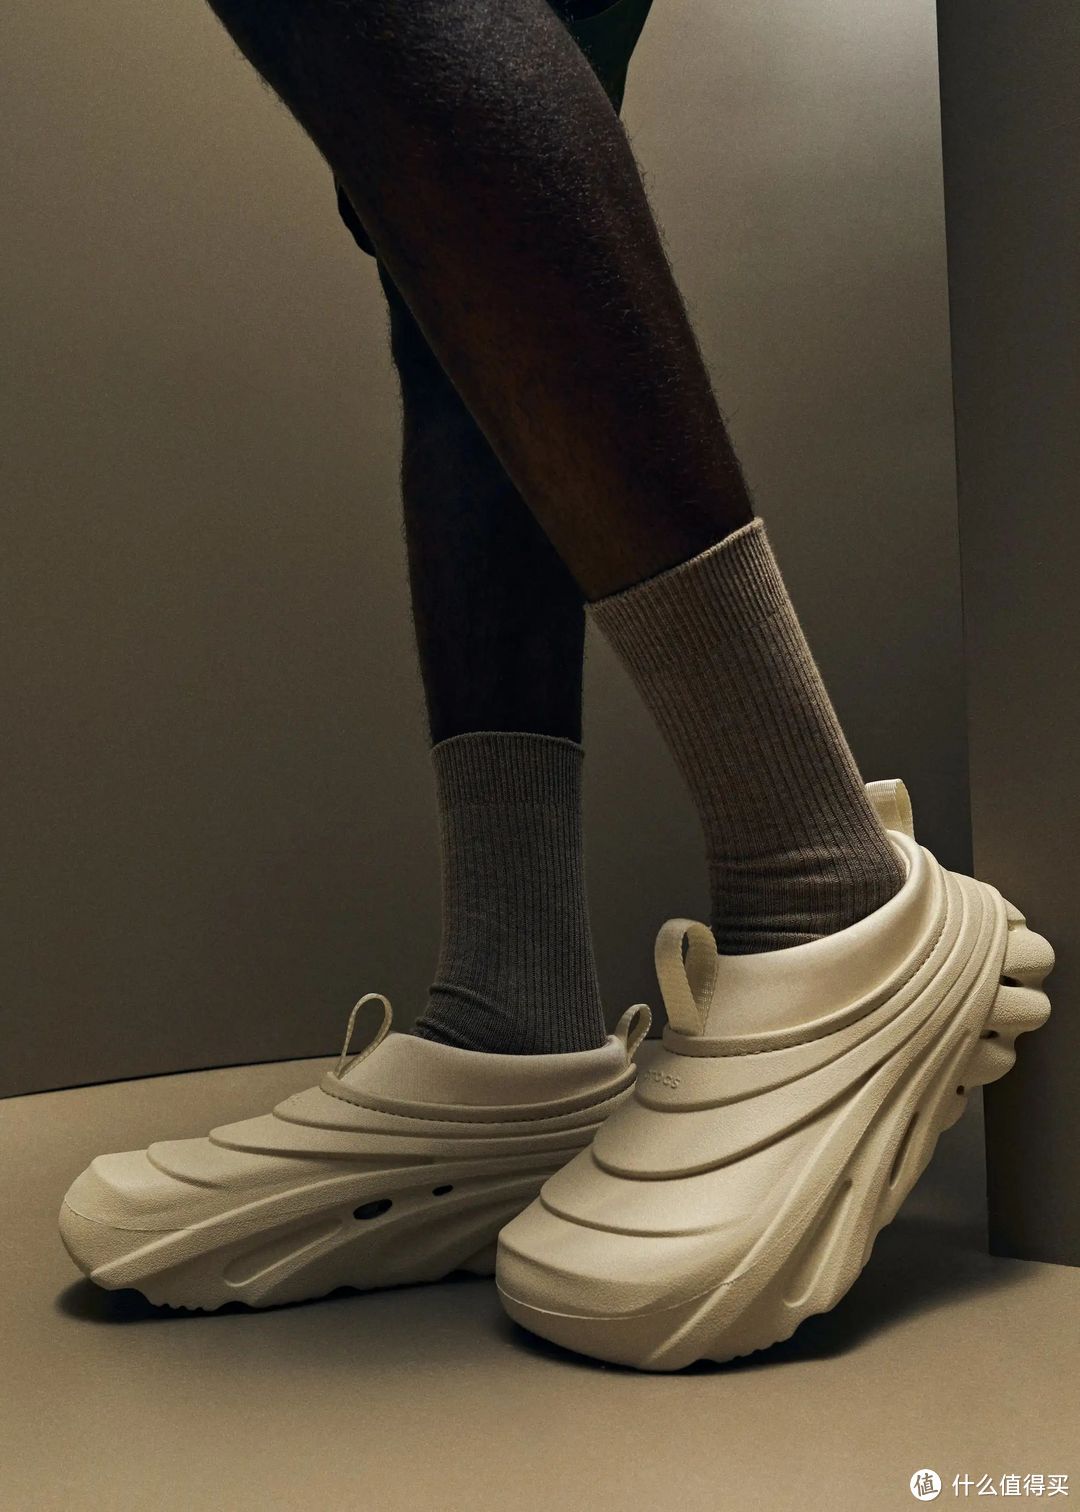 冬天照样穿，KITH x Crocs 合作鞋款惊喜发布，看谁能忍住不心动！